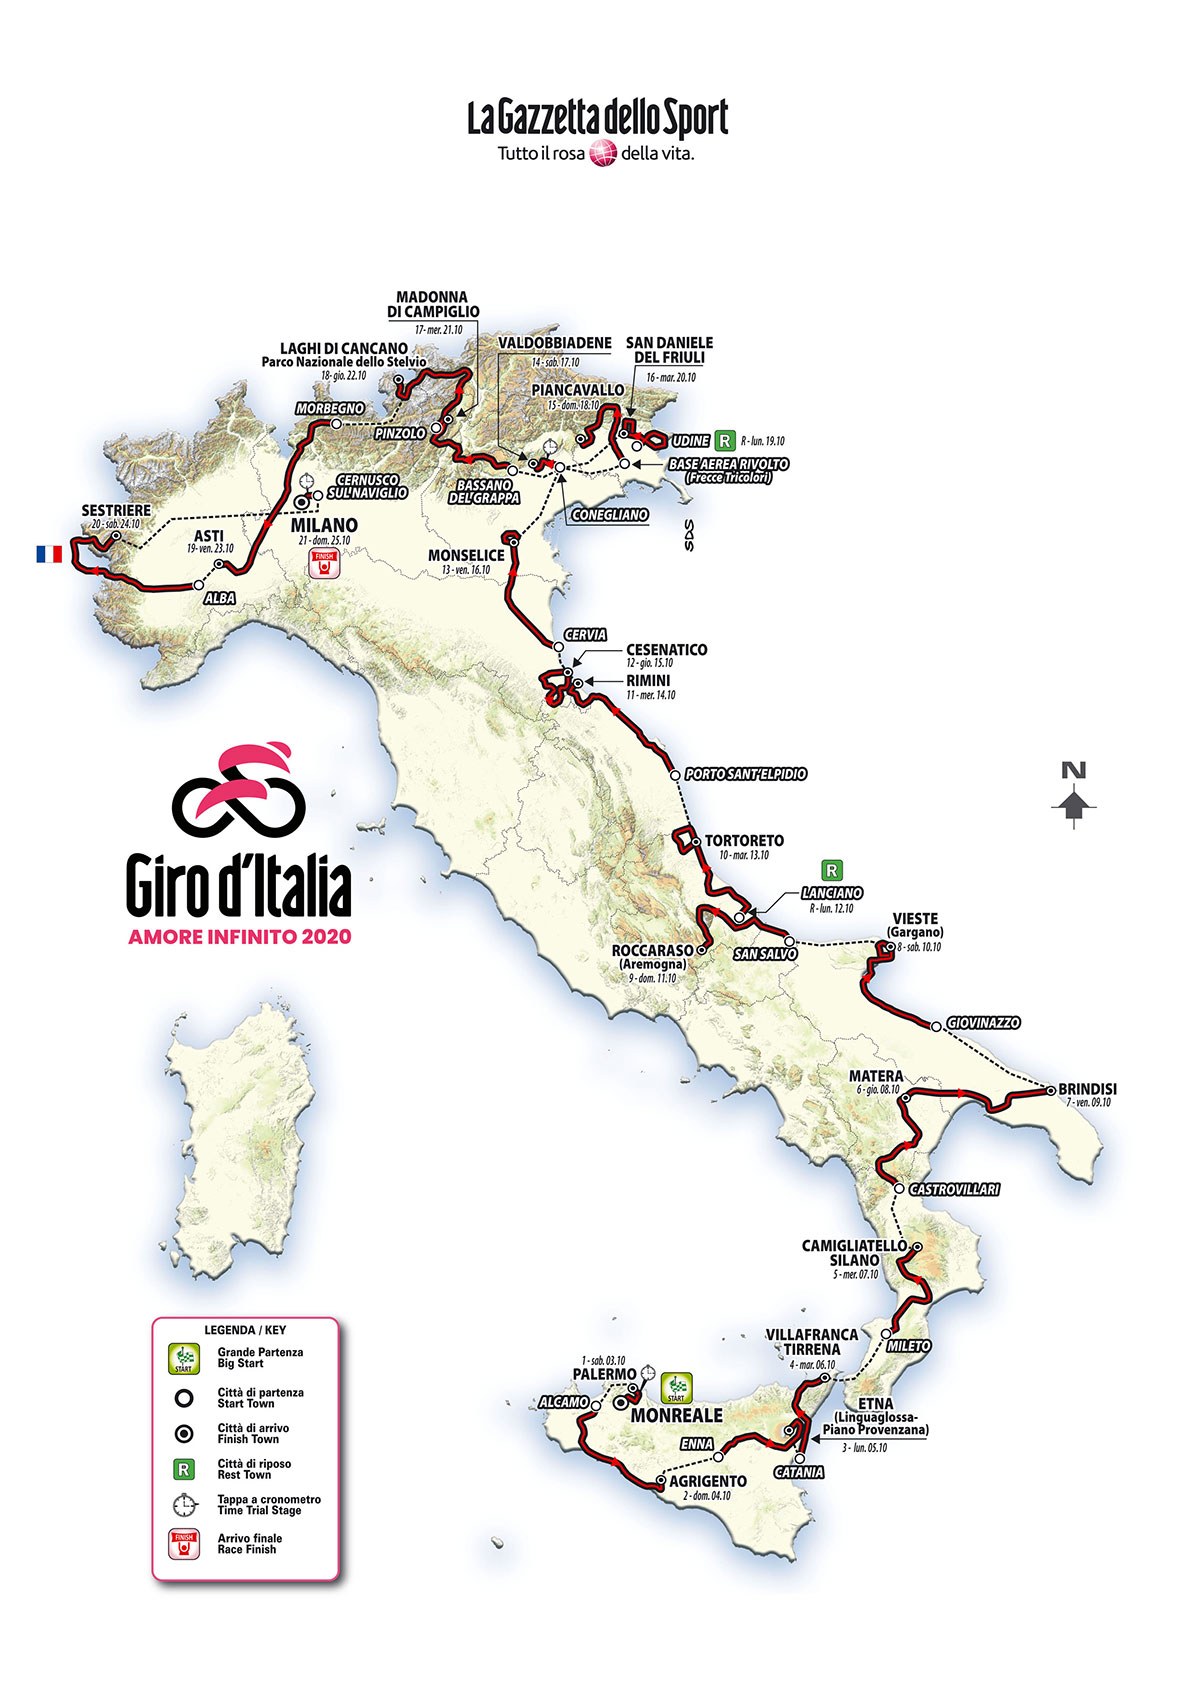 Il percorso del Giro d'Italia 2020 COVID edition